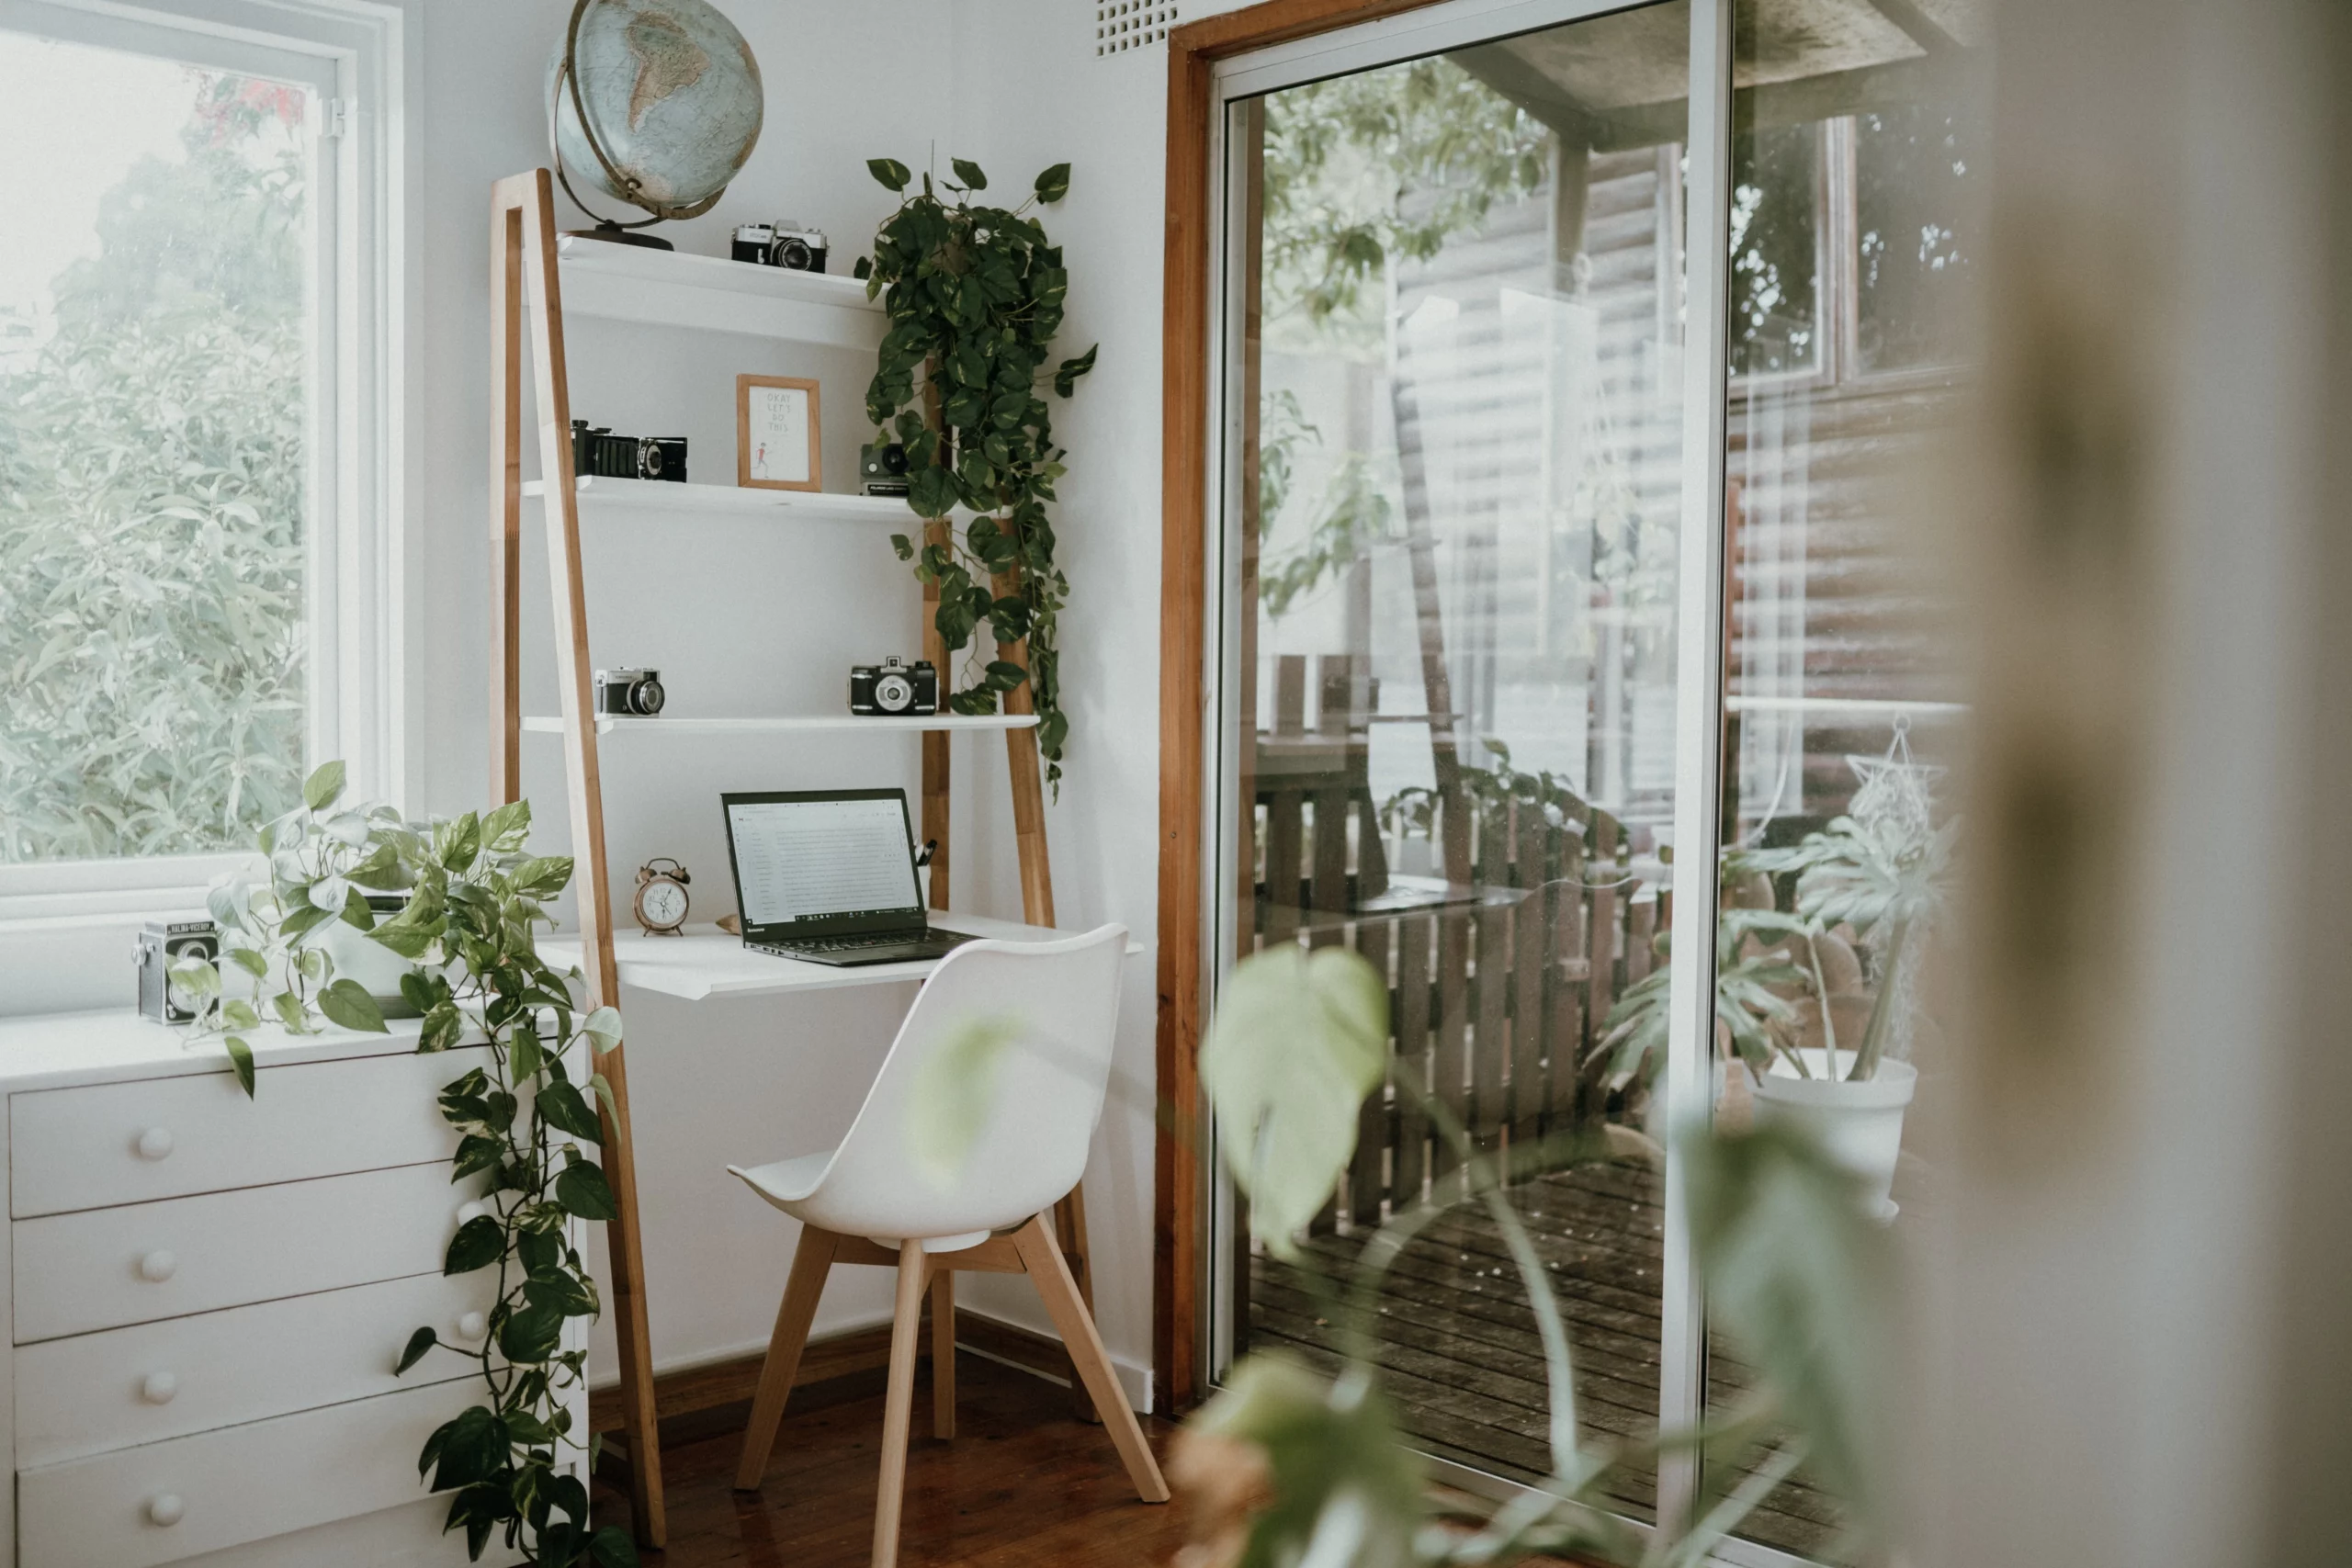 Una zona de trabajo remota, luminosa y aireada, rodeada de muebles y plantas verdes. El escritorio se encuentra bajo una zona de estanterías en la pared, junto a una gran ventana que da a un jardín verde. Debajo de la ventana, hay un gran mientras tocador. A la derecha del escritorio hay un cuarto de sol.